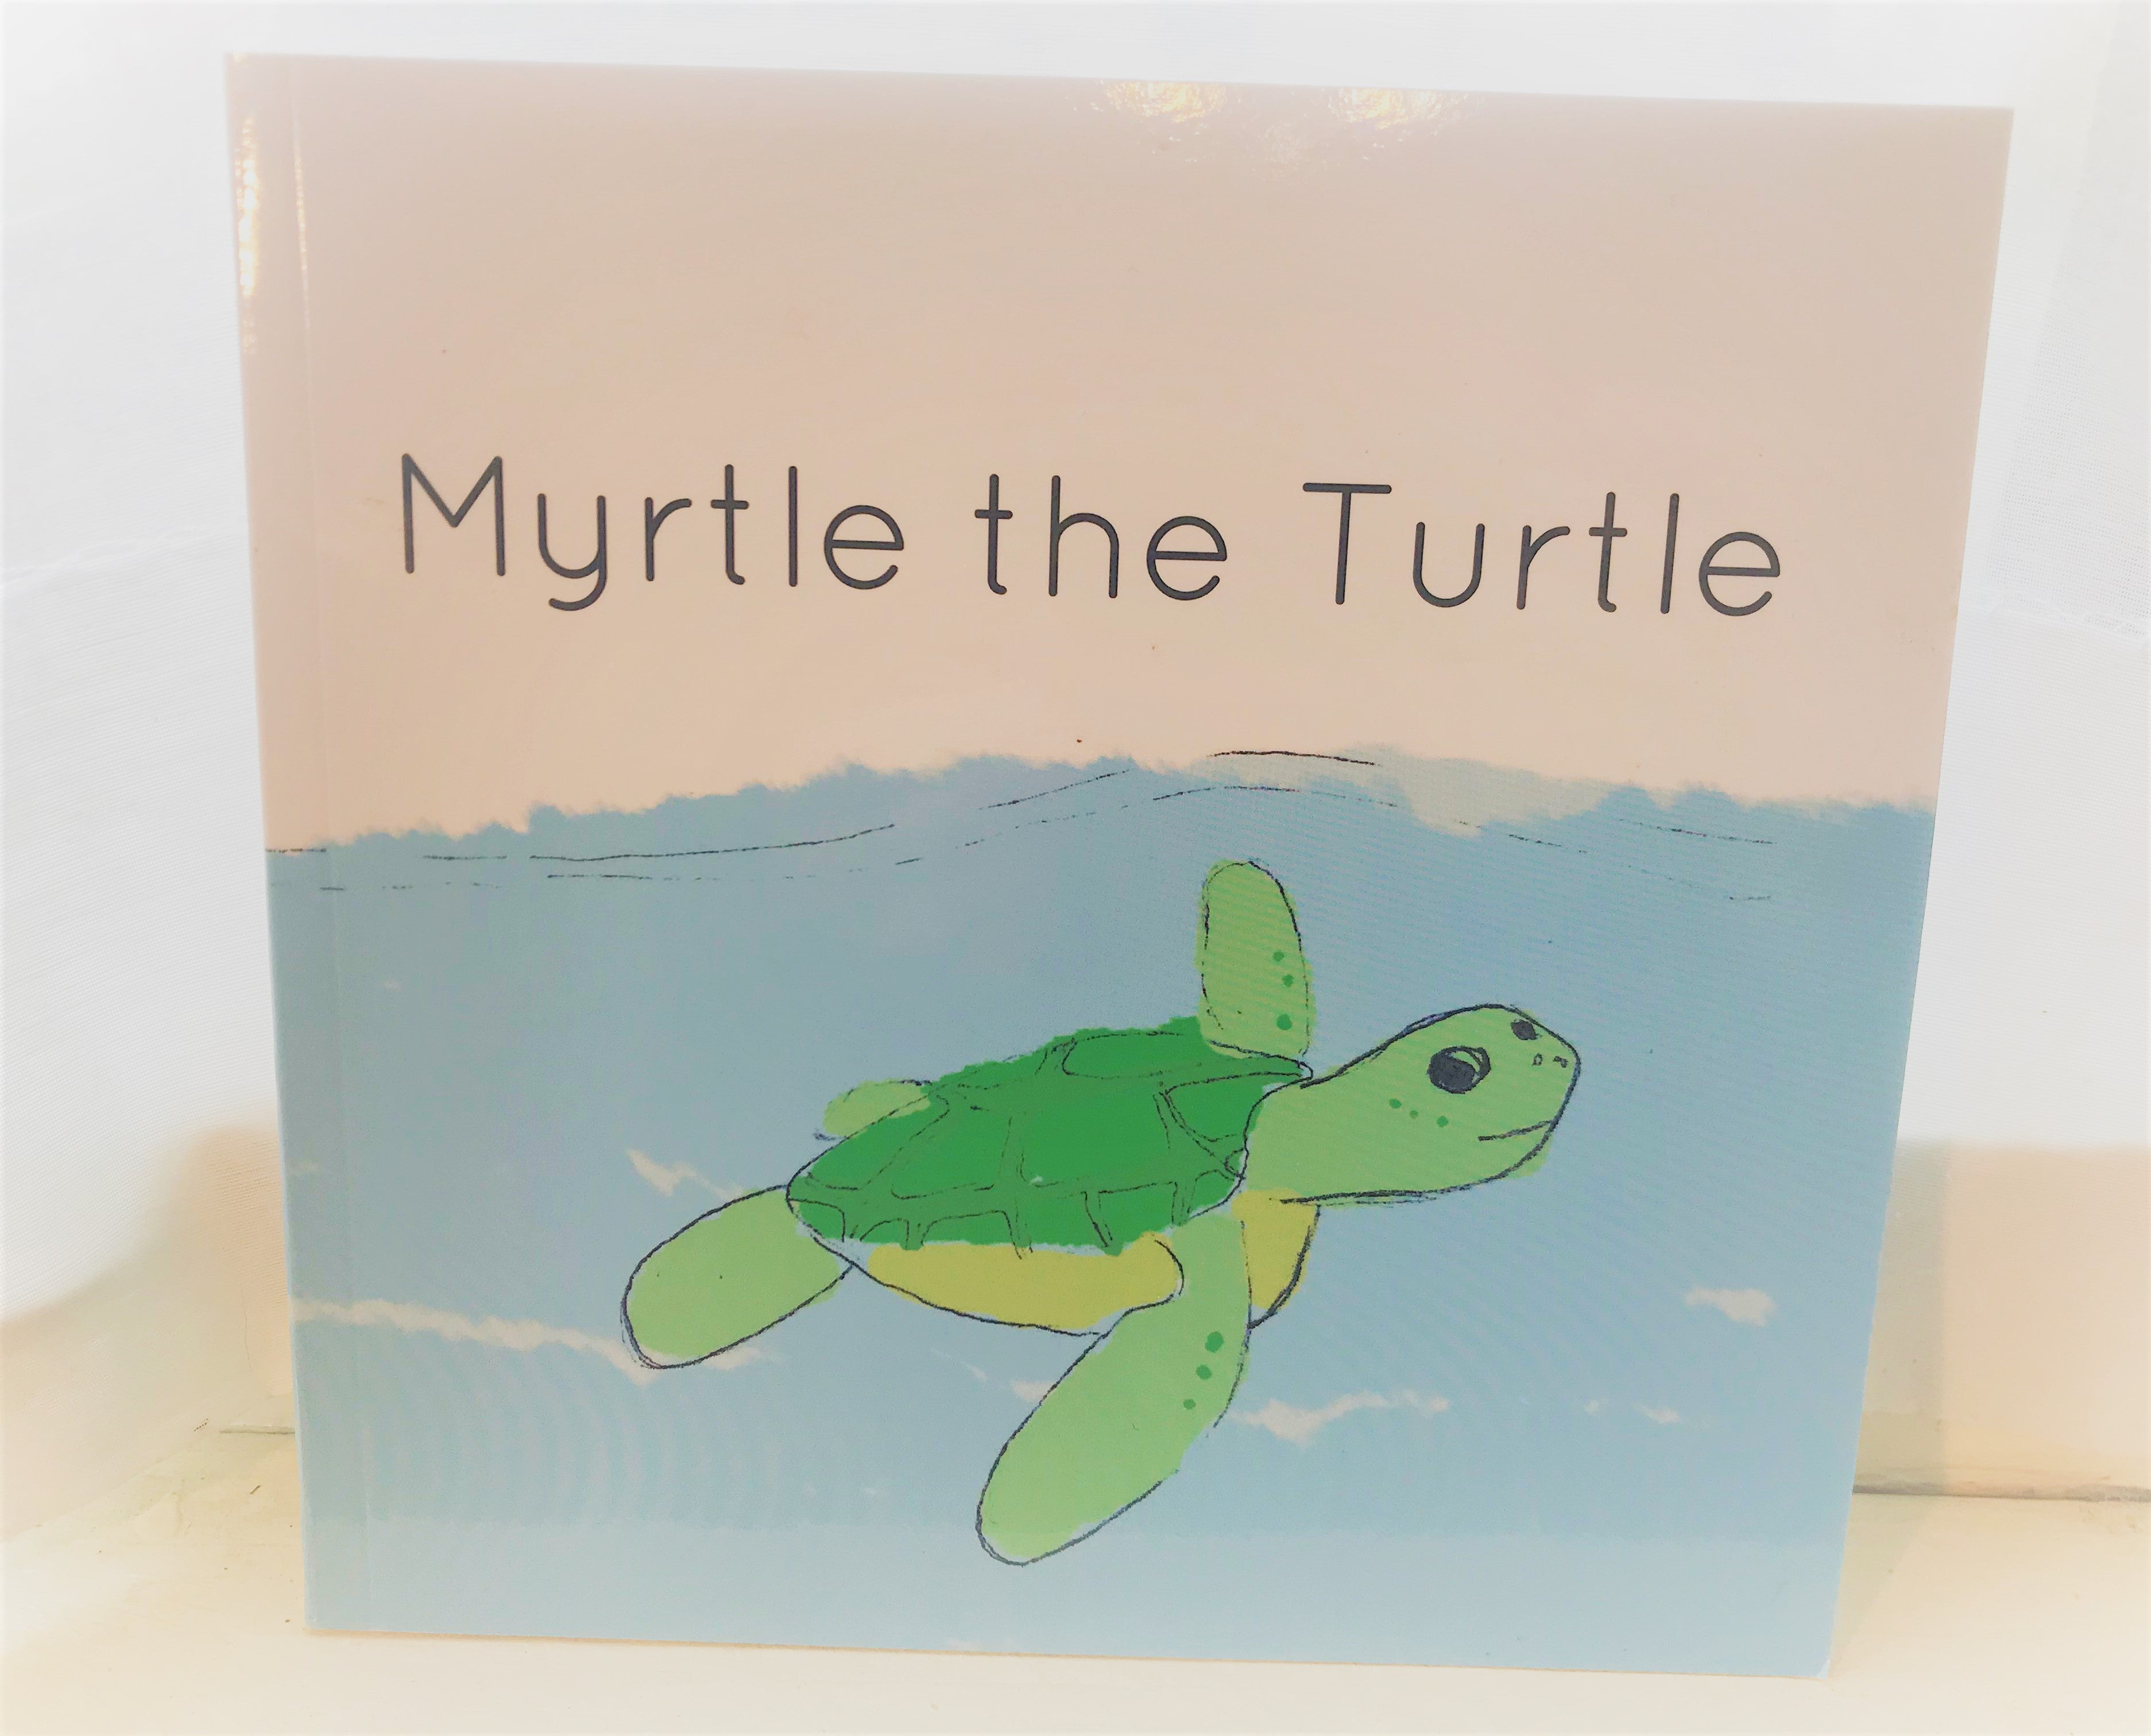 Sea Turtle [Book]